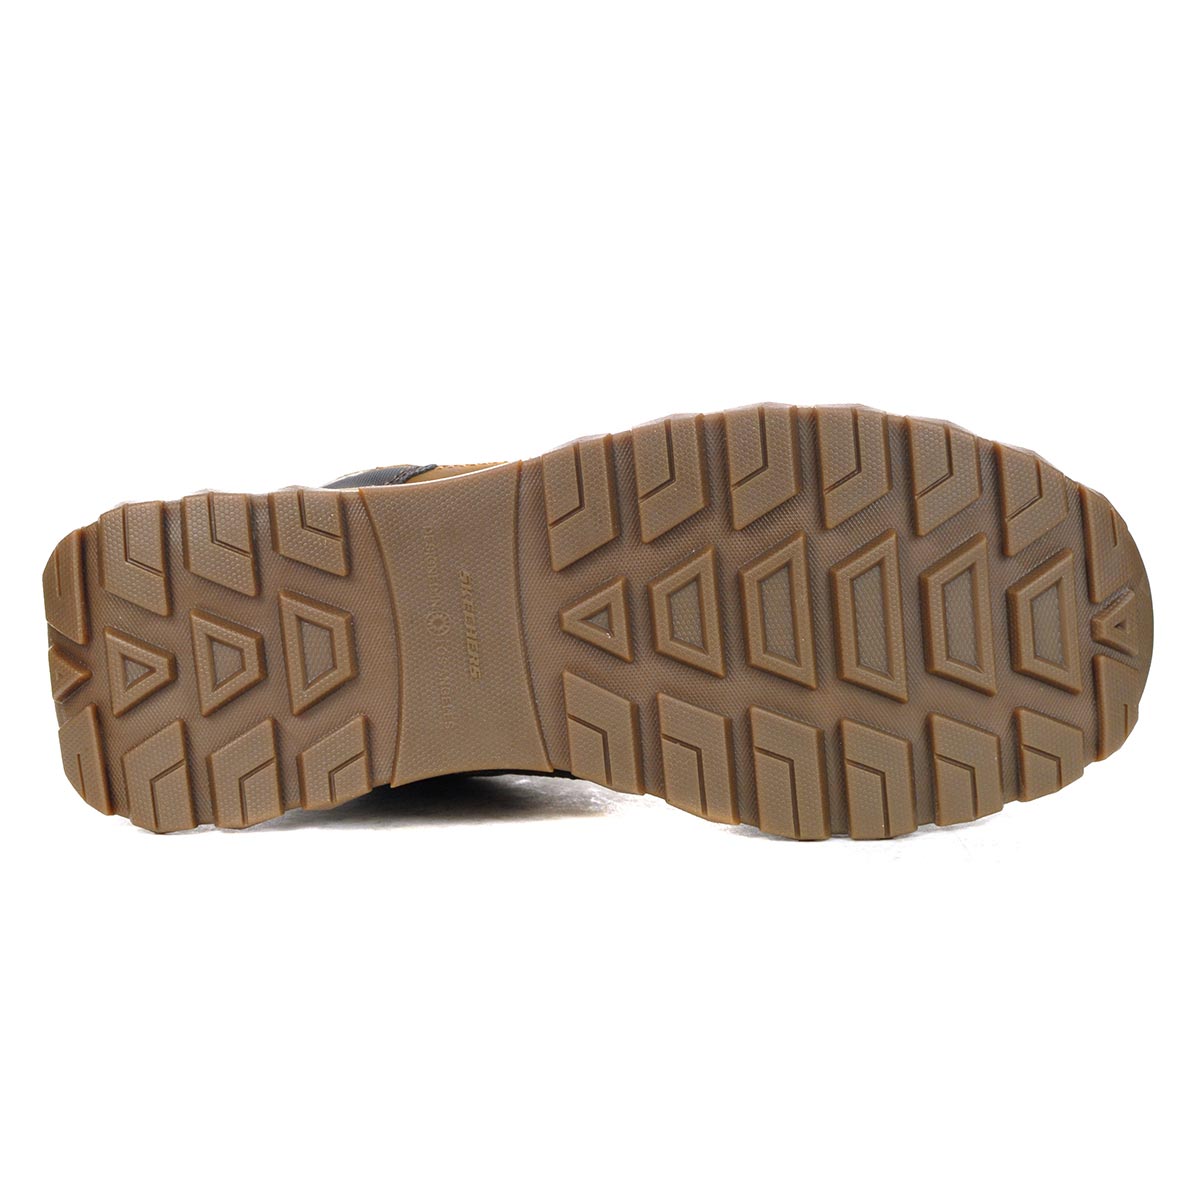 Skechers Men's Zeller - Bazemore Brown Hiking Boots/Shoes 